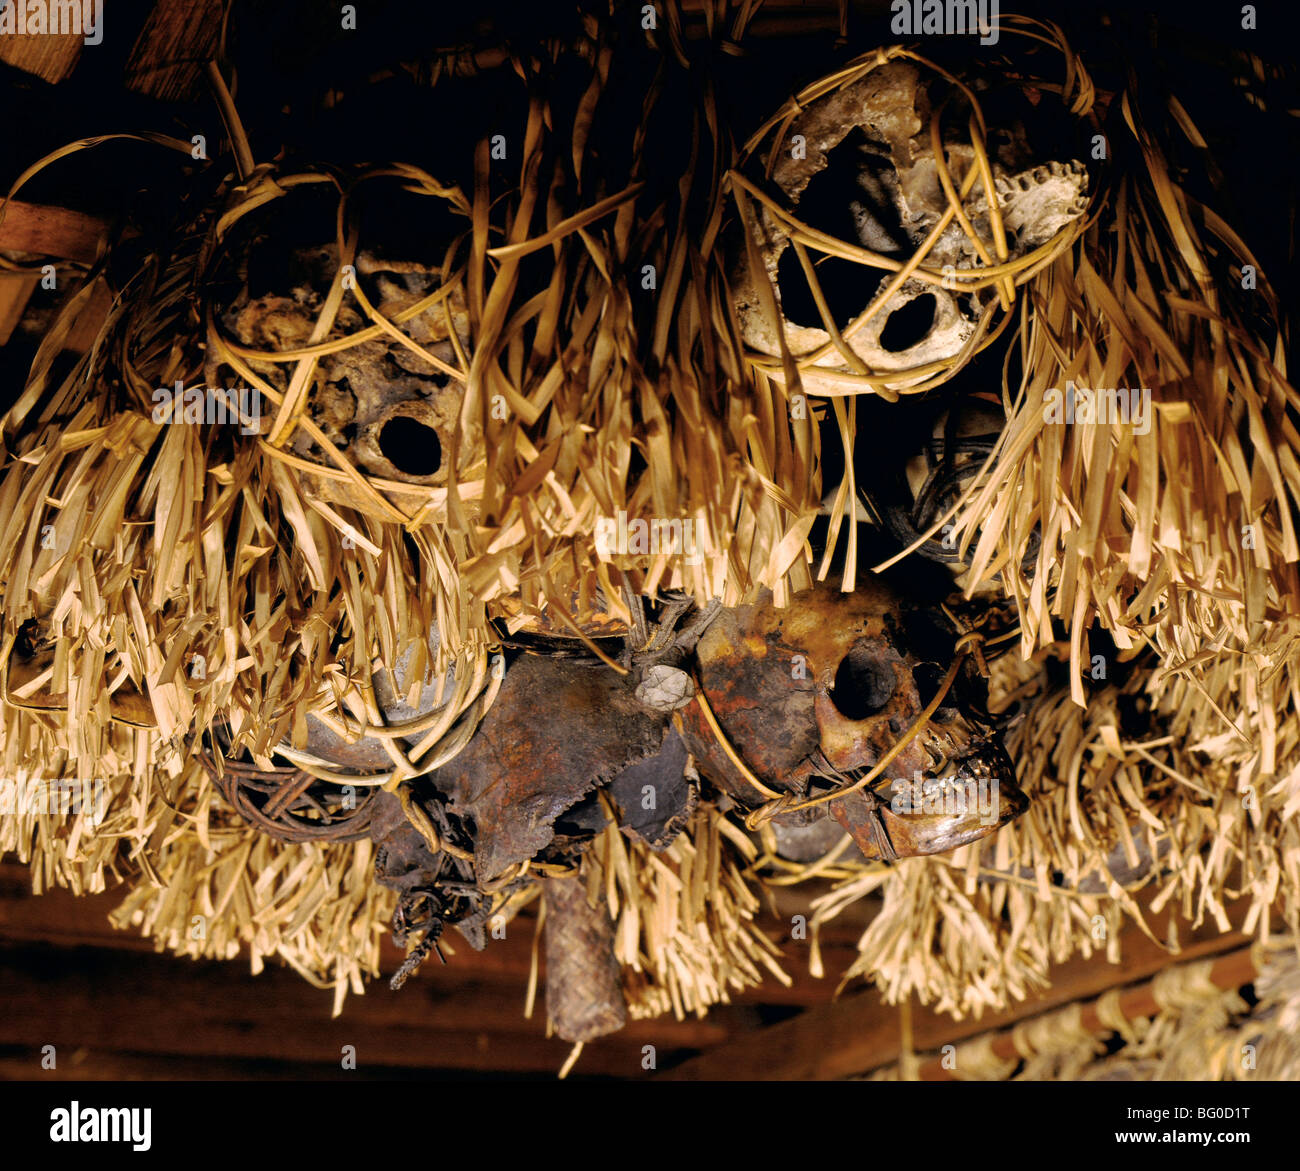 Trophäe Schädel aus Headhunting hängen in einem Langhaus Galerie in Sarawak, Borneo, Malaysia, Südostasien, Asien Stockfoto